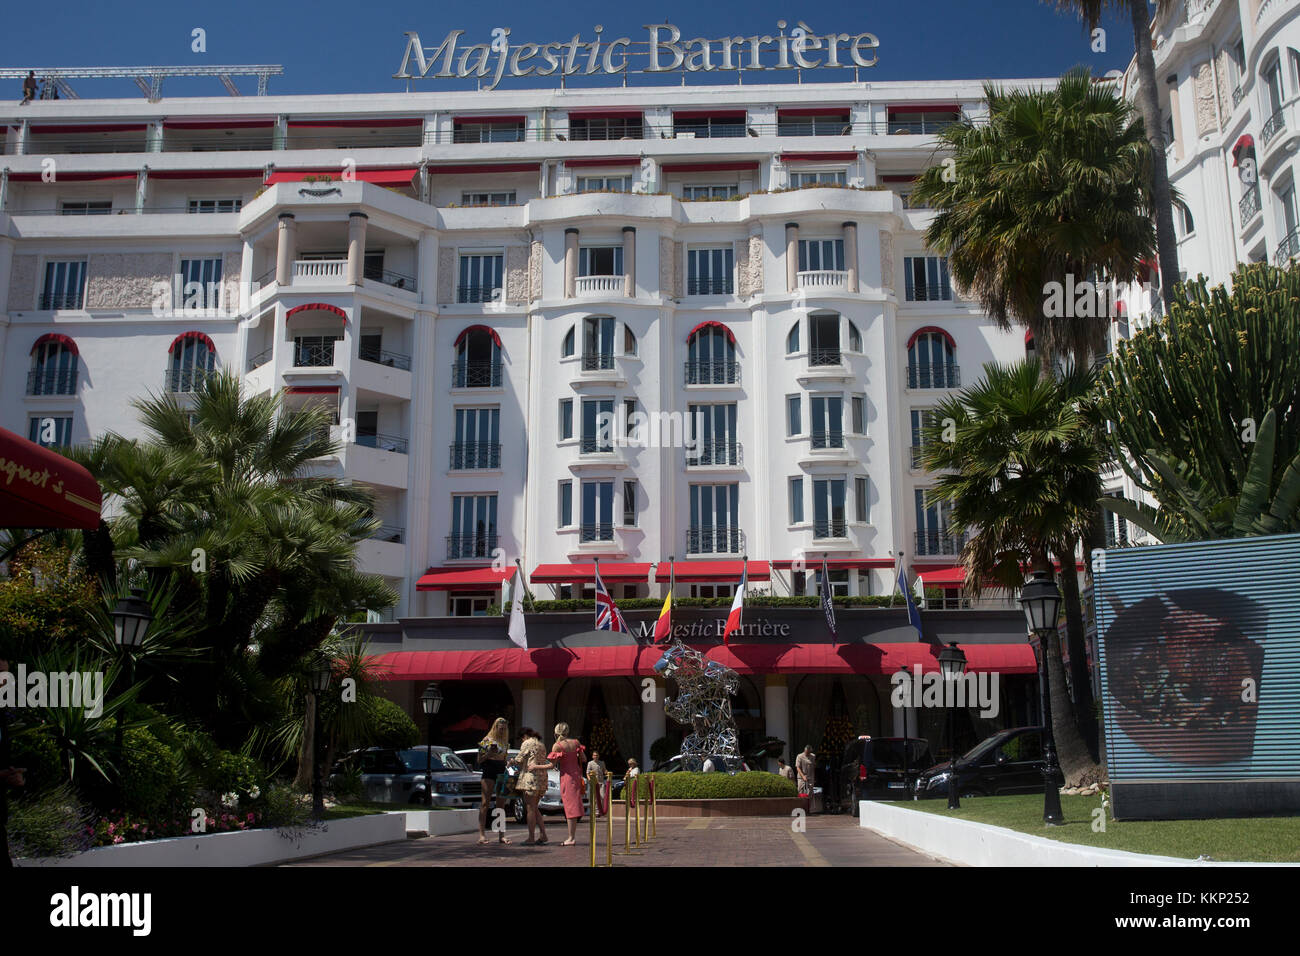 Majestic Barrière hôtel 5 étoiles de luxe, Cannes, France Banque D'Images